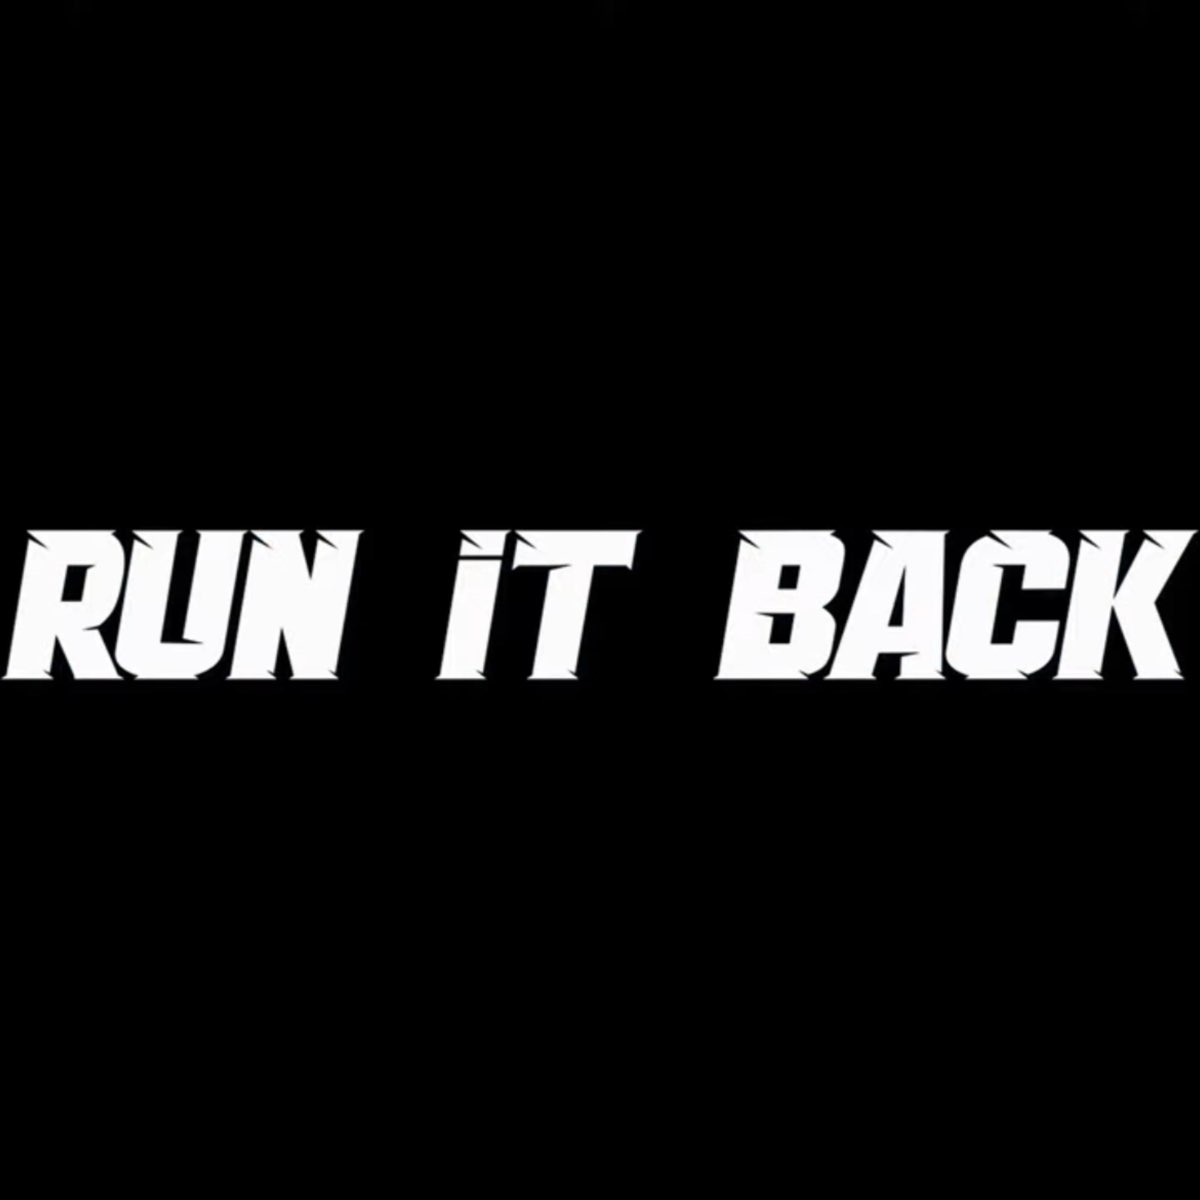 Run it back. It Run. Run it back 3. Run it back Music.